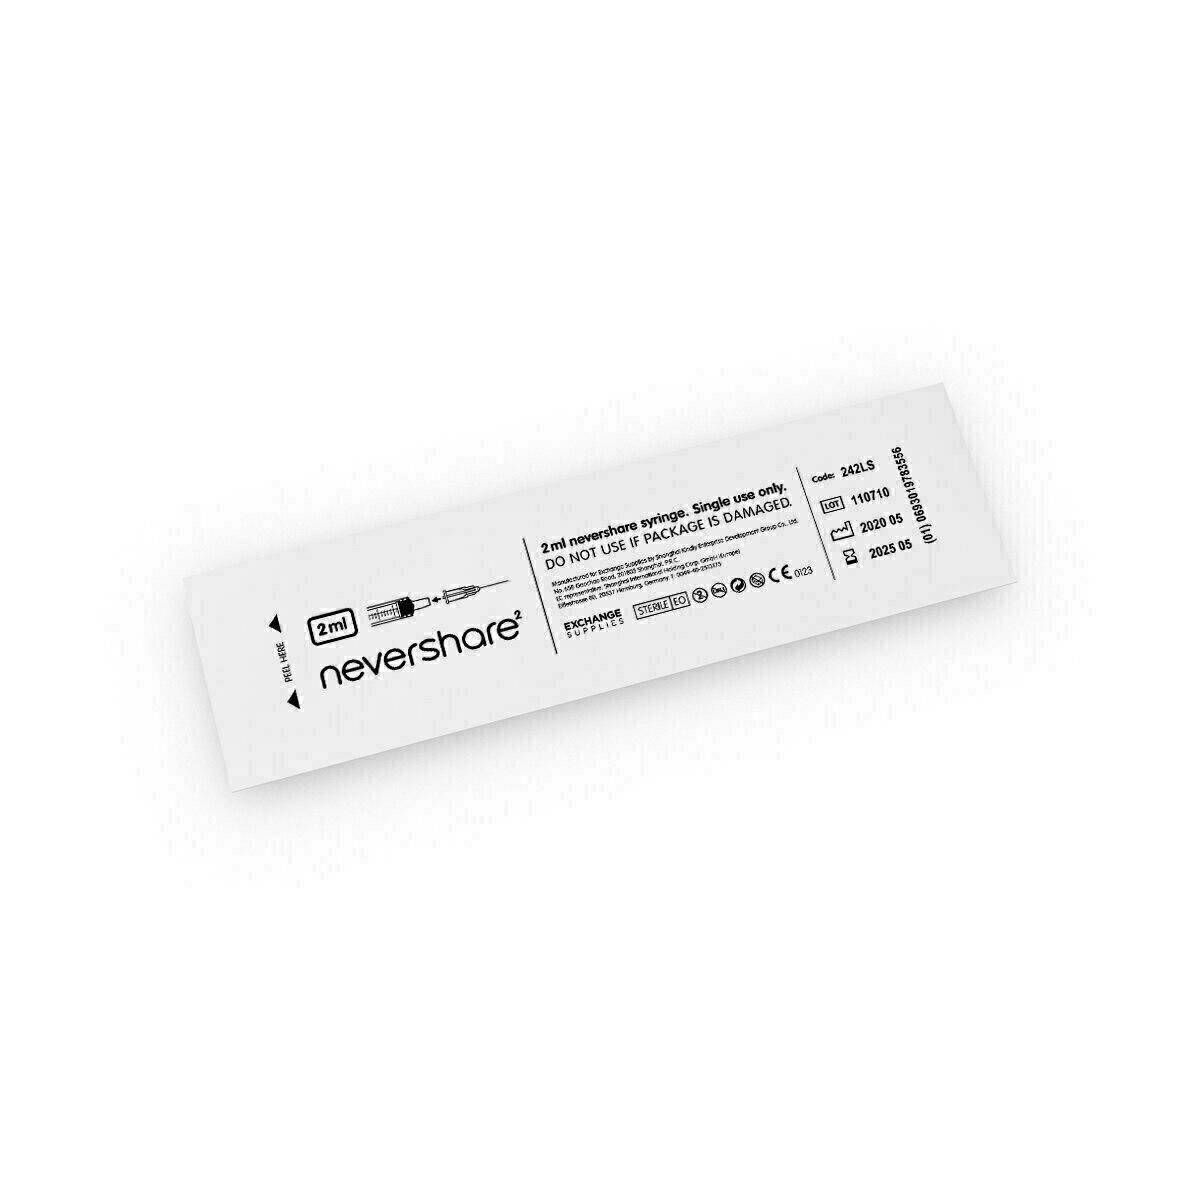 2.5ml Nevershare Mixed Luer Slip Syringes - UKMEDI